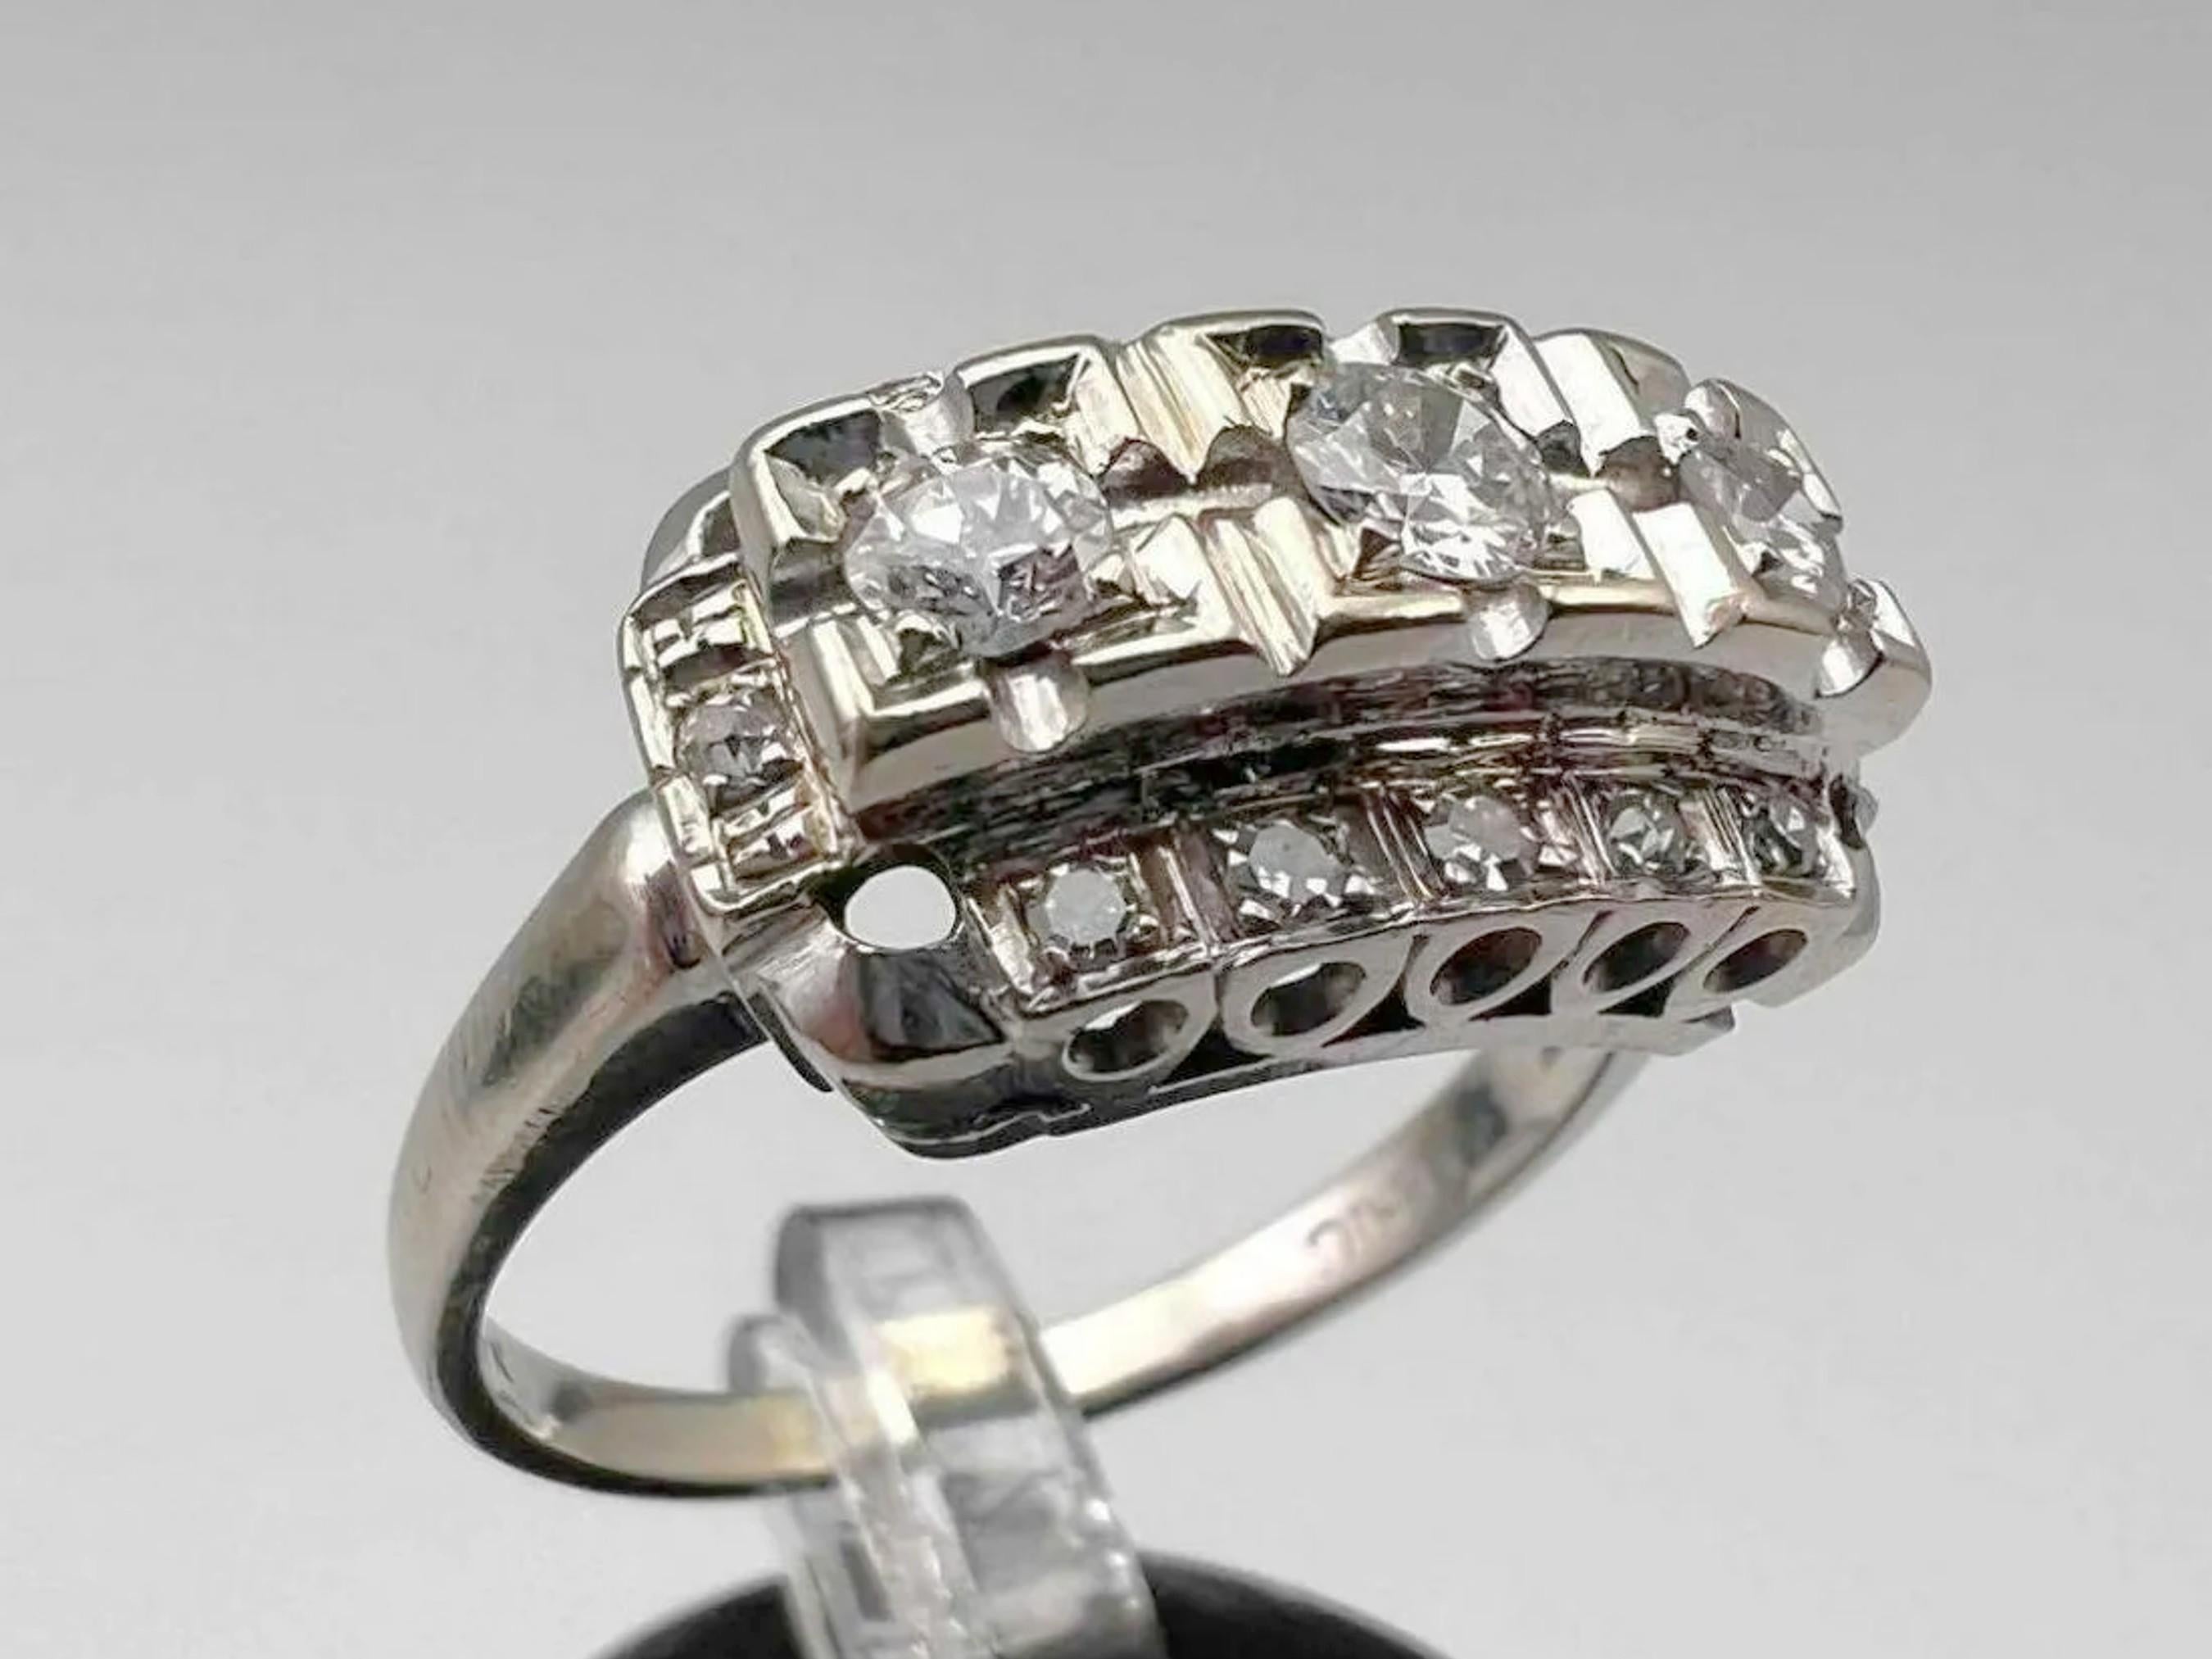 Magnifique bague de fiançailles Art of Vintage à 15 diamants en or blanc 14 carats. La face de l'anneau s'élève jusqu'à trois diamants ronds en serti clos dans une monture carrée. Au-dessous se trouvent 5 diamants alignés de chaque côté, avec une